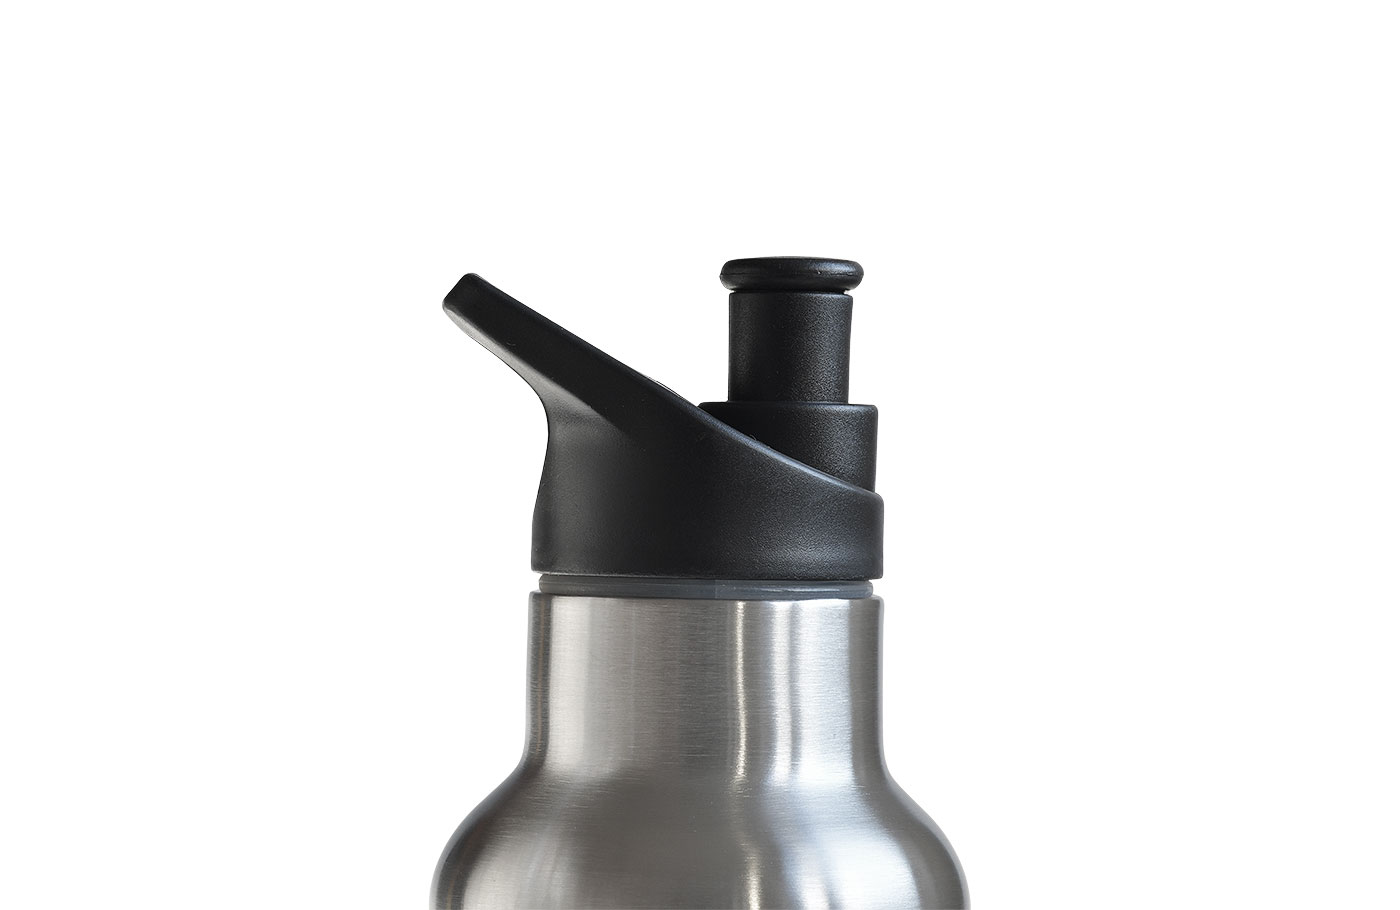 Popup-Deckel für Trinkflasche - TFL 002. BPA-freies PP mit Silikondichtung. Seitenansicht auf Flasche.